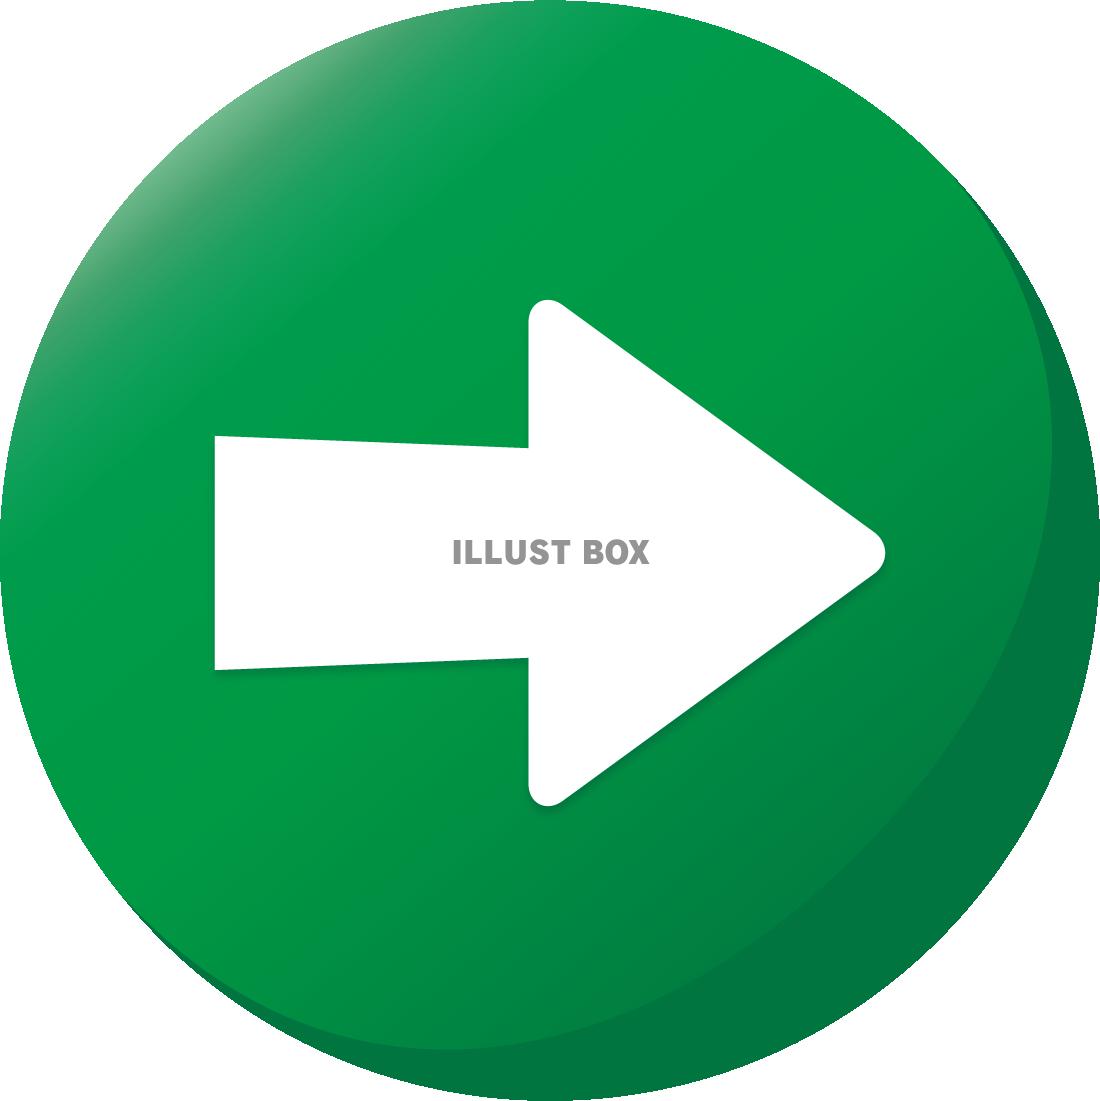 かわいい緑の矢印ボタンアイコンのイラストフリー素材(ゲーム風...